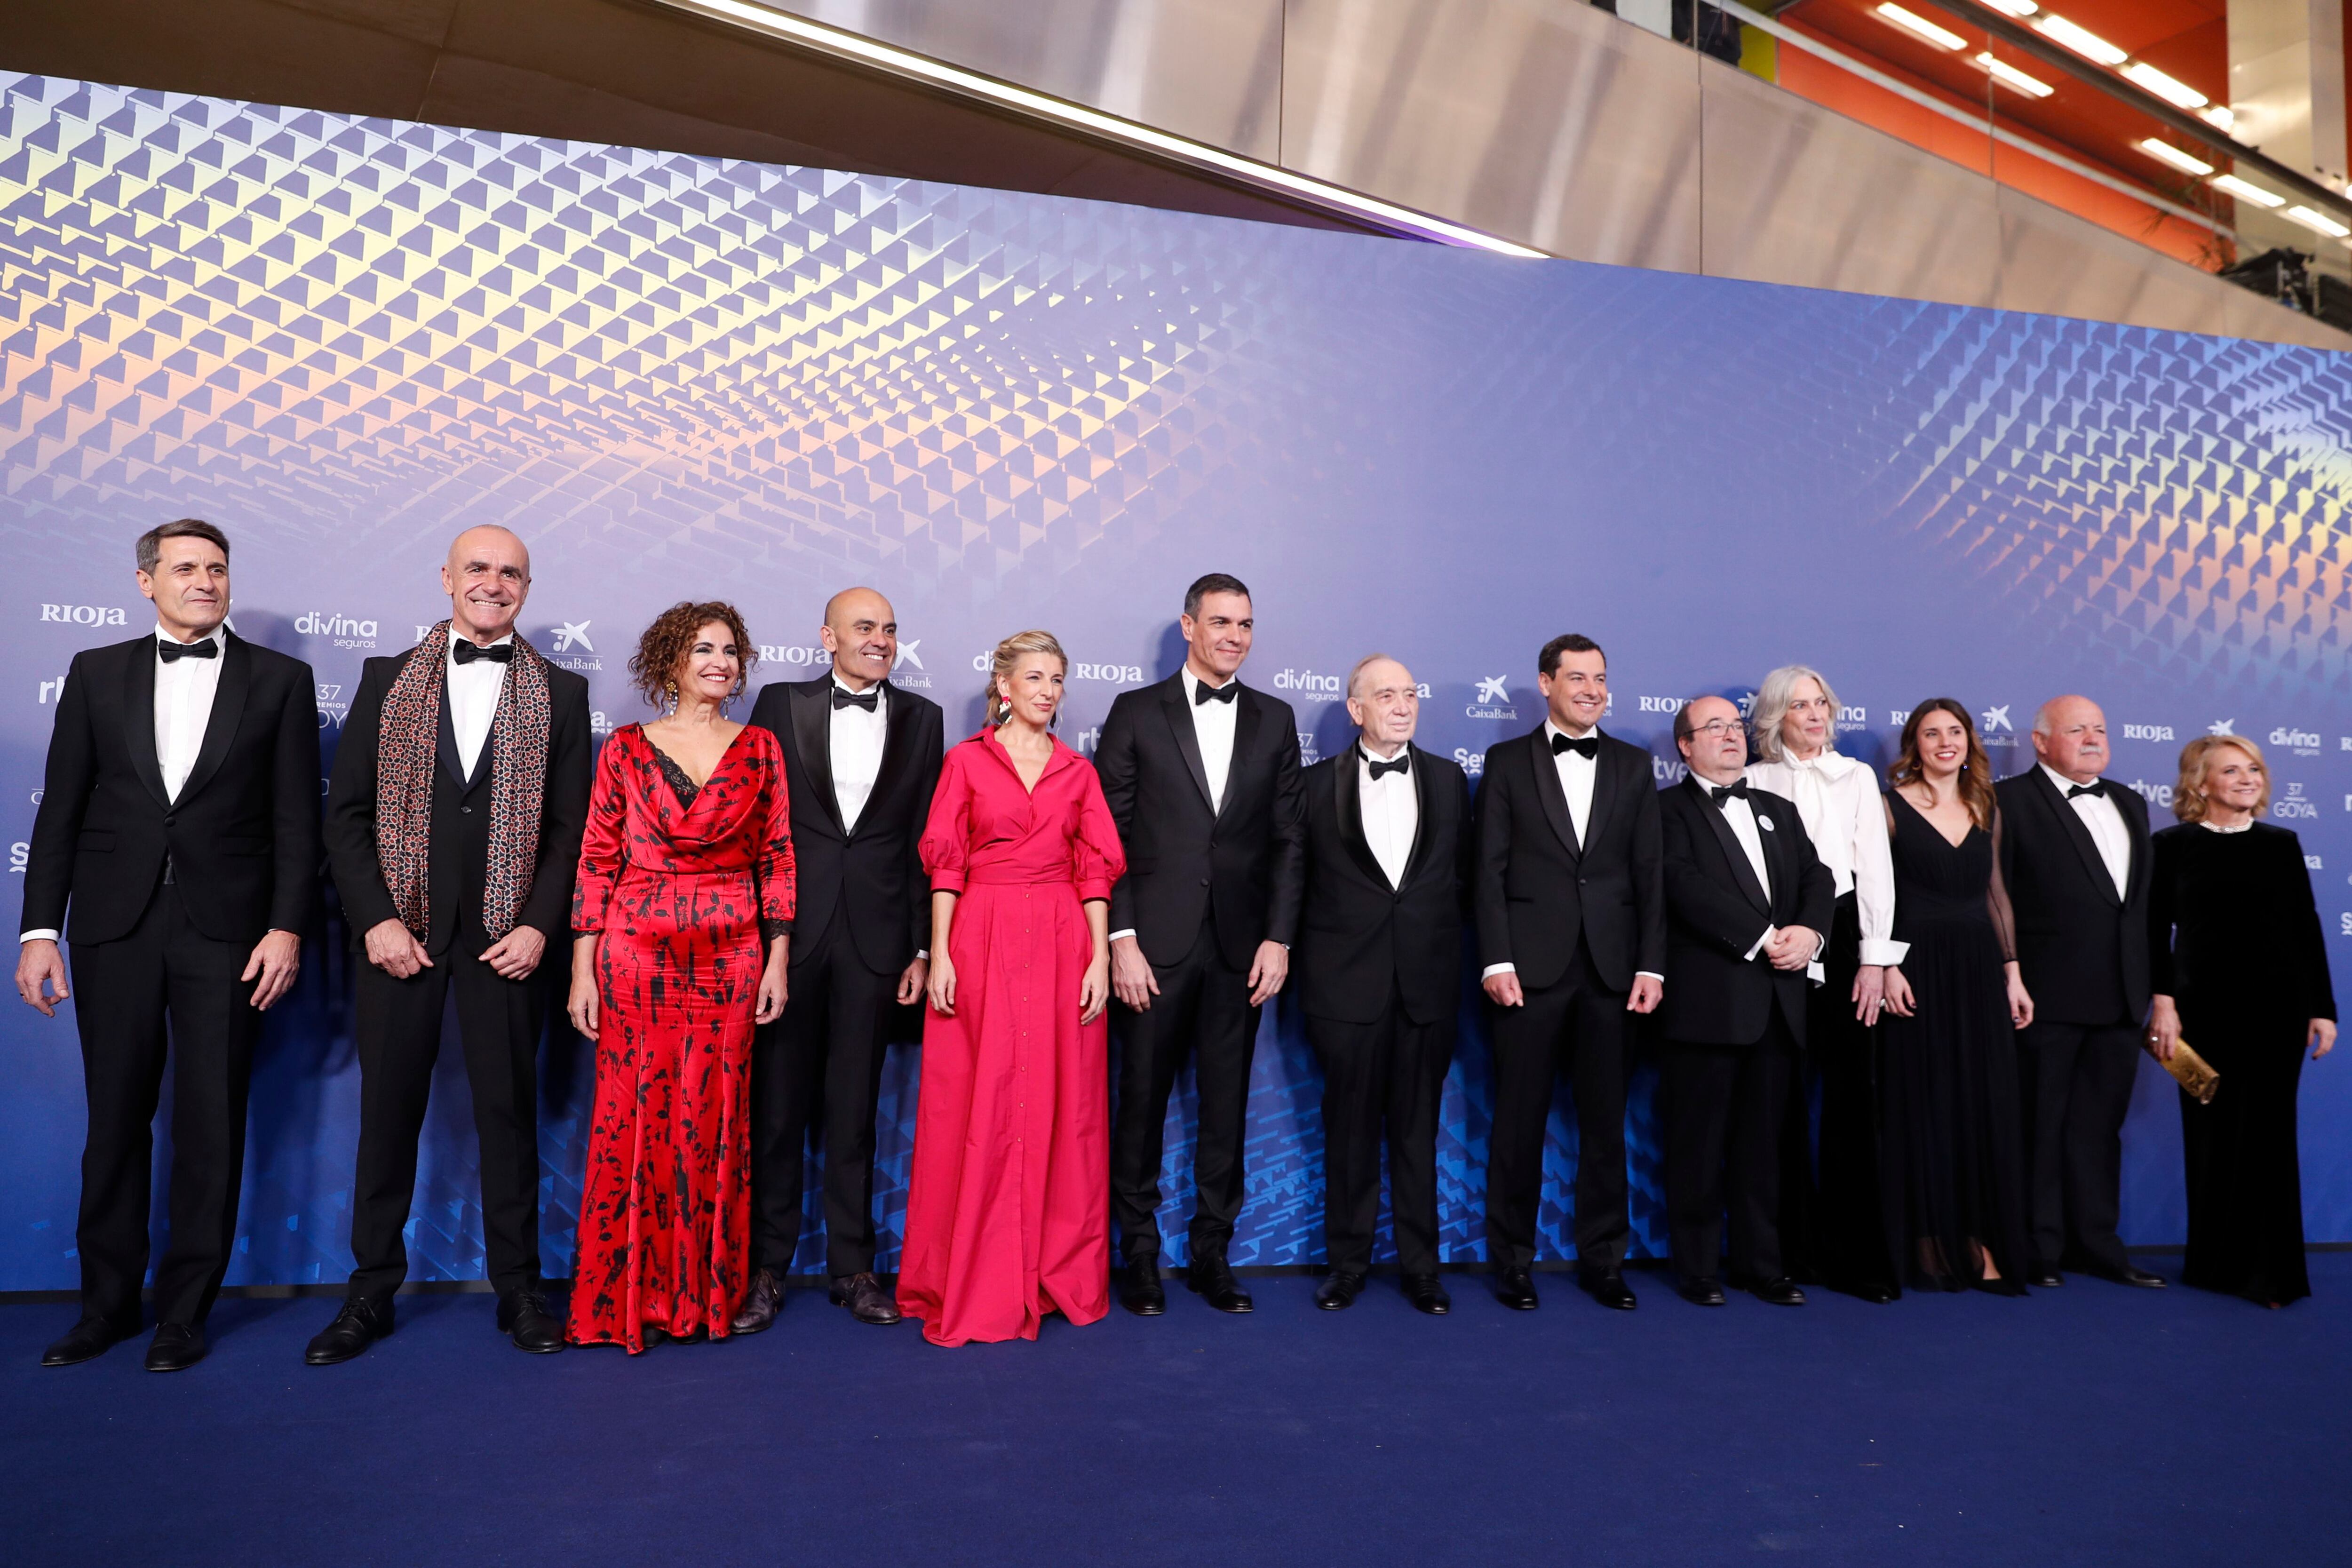 El presidente del Gobierno, Pedro Sánchez, acompañado por otras autoridades y miembros de la Academia de Cine, en la alfombra previa a la ceremonia.